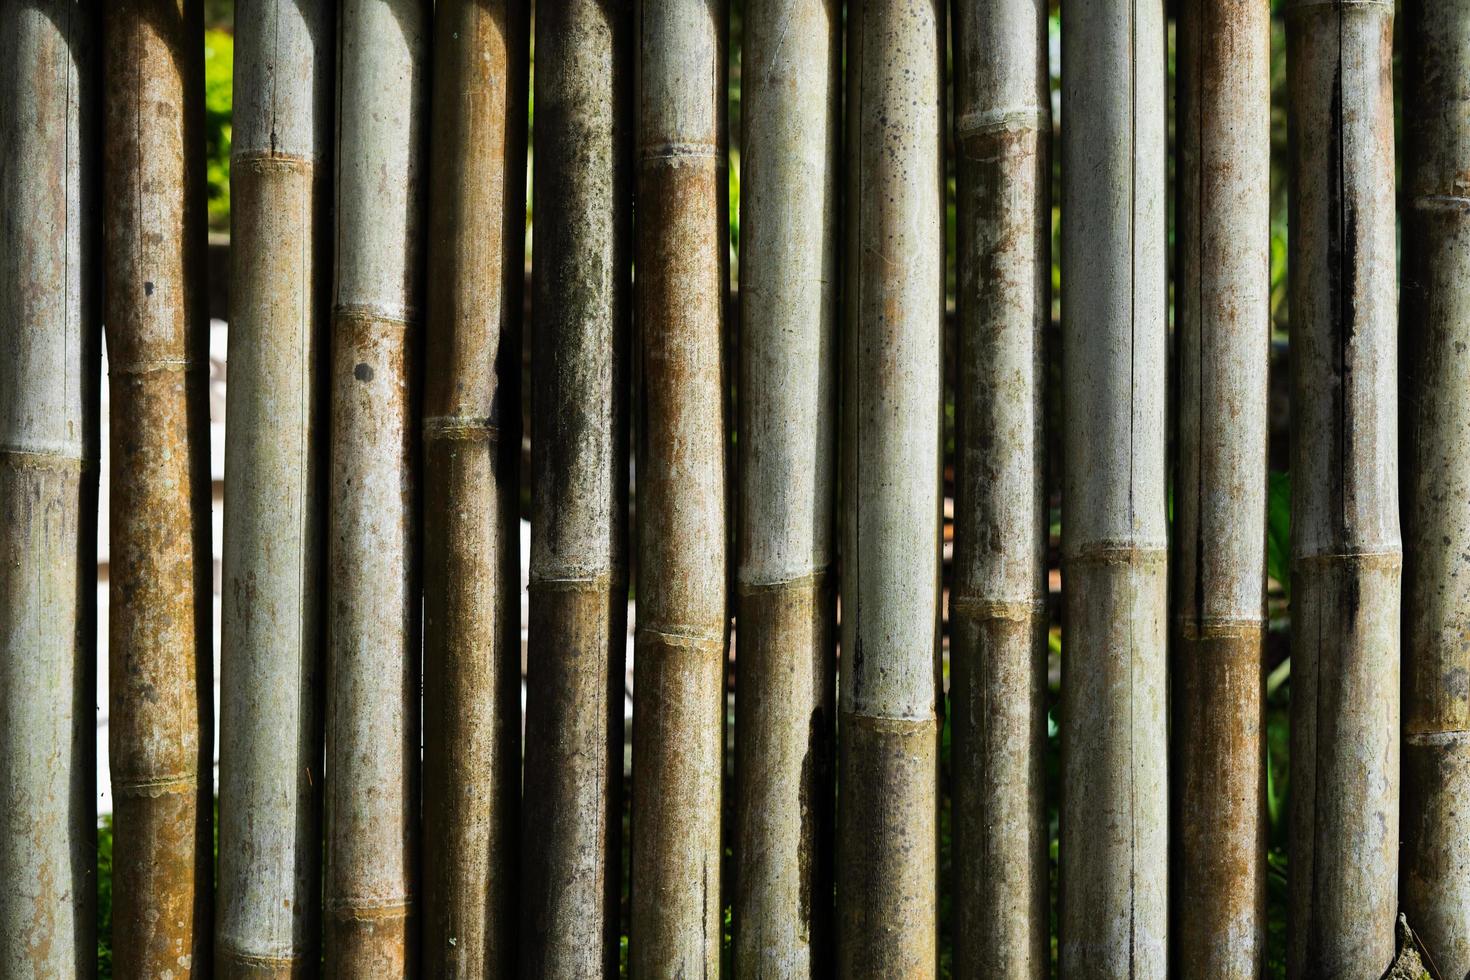 ytan på bambuväggen för bakgrunden. gammal torkad bambu med en detaljerad struktur. foto